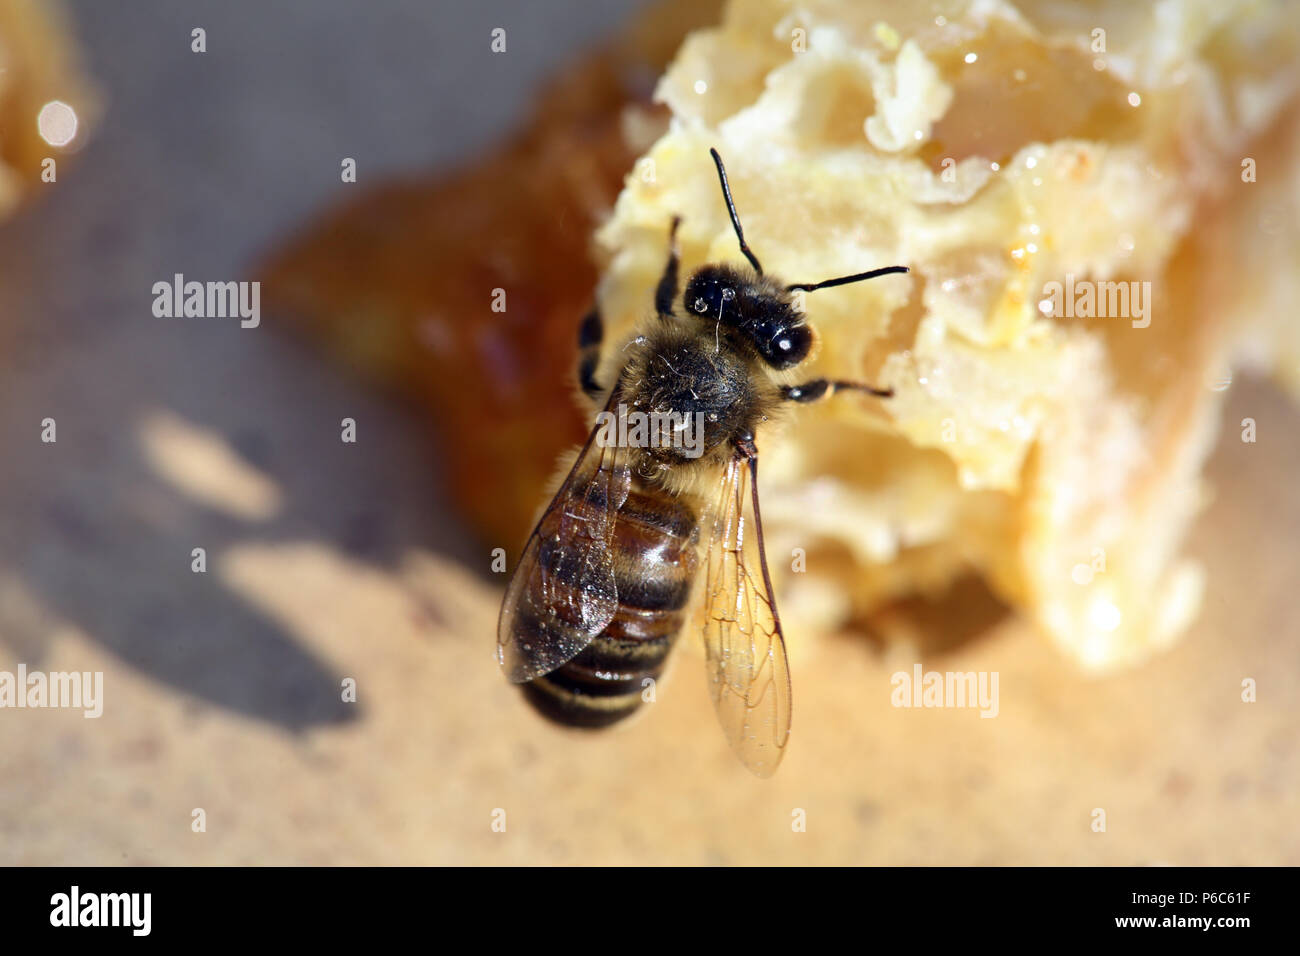 Berlin, Germany - Bee sucks honey from a broken piece of honeycomb Stock Photo